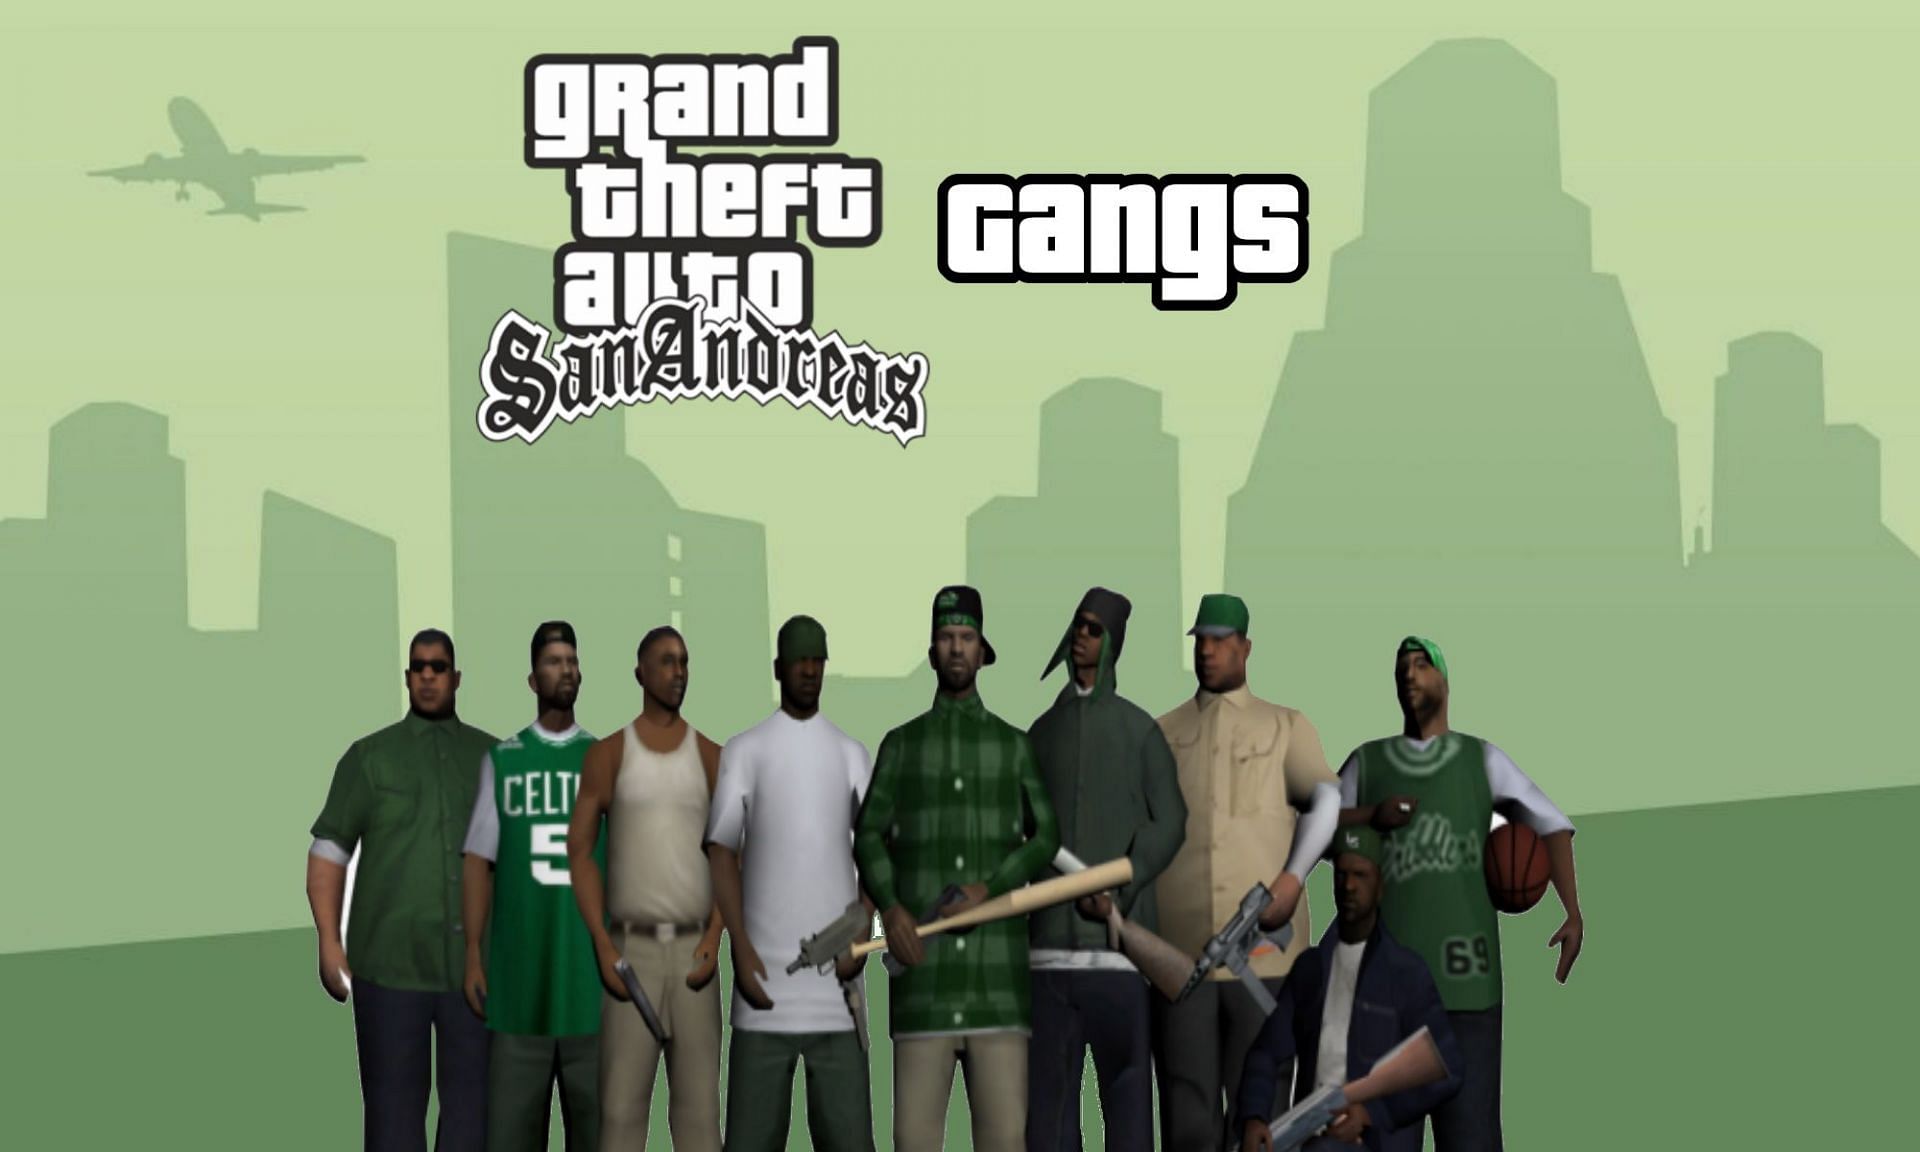 Download Leader of Los Santos Vagos for GTA San Andreas